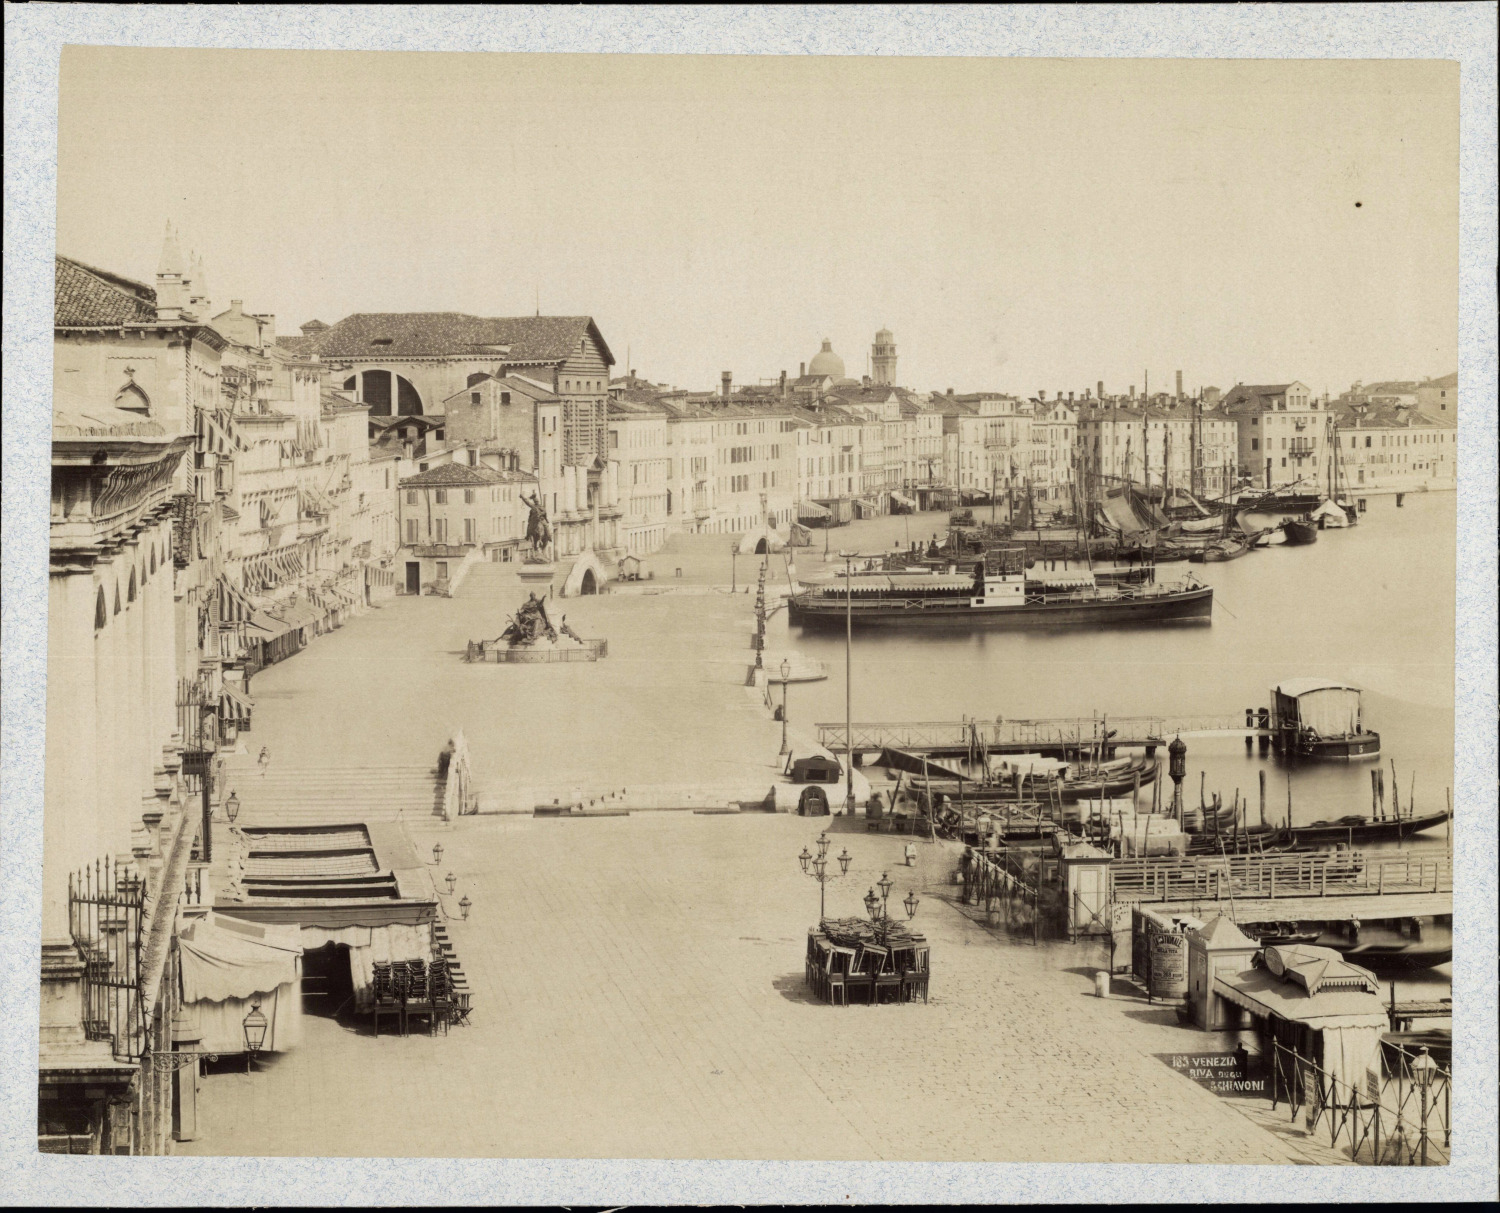 Italy, Venice, Riva degli Schiavoni, circa 1880, vintage print vintage print vintage print, le